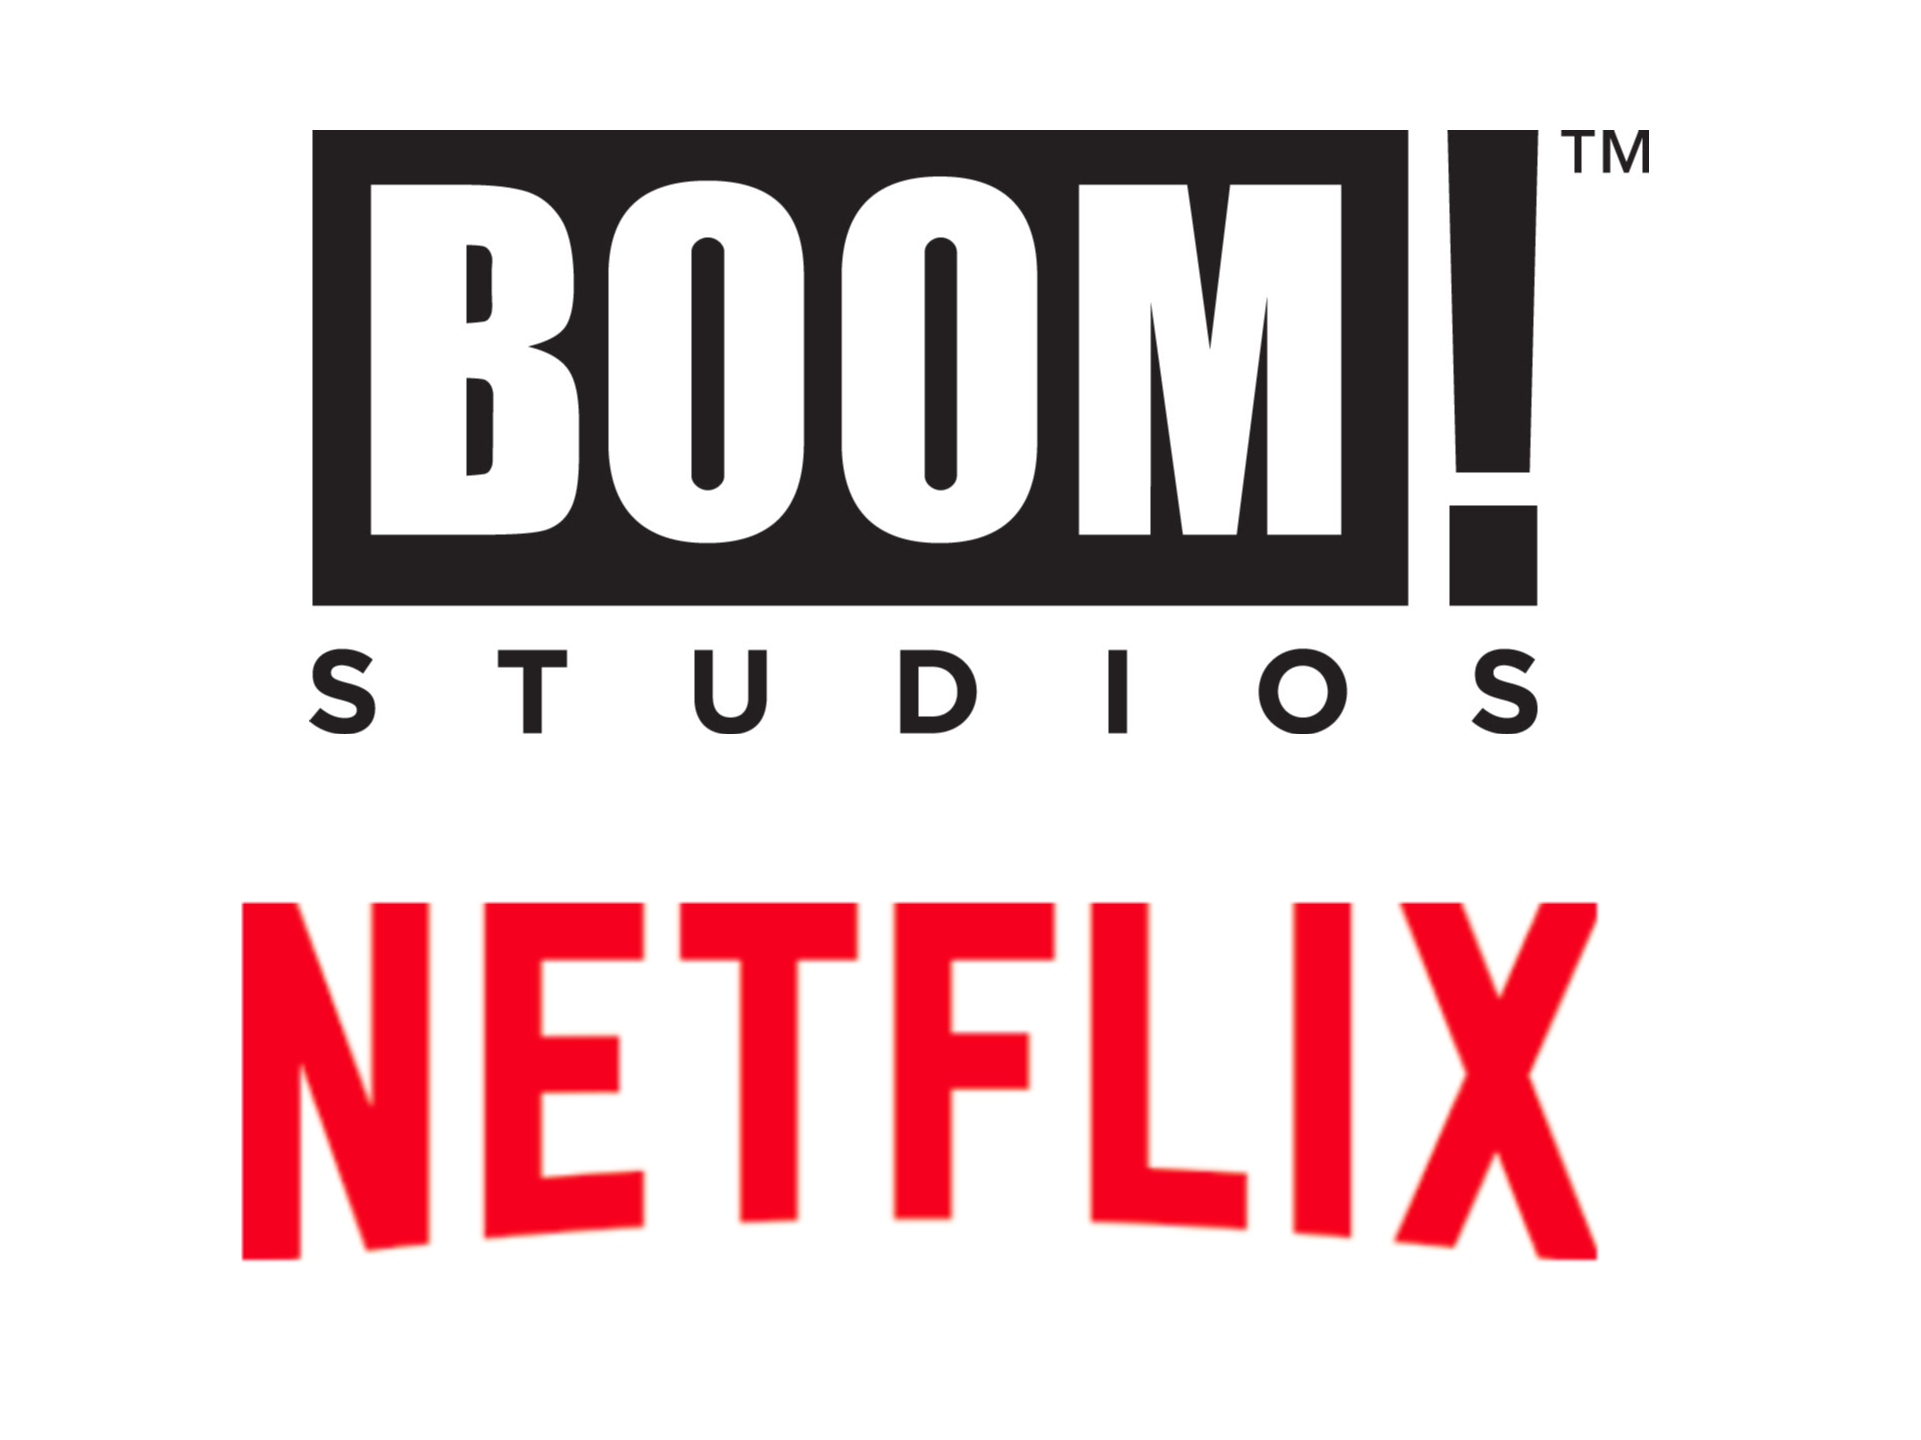 NETFLIX [News]: BOOM! Studios Receives A First-Look Deal!